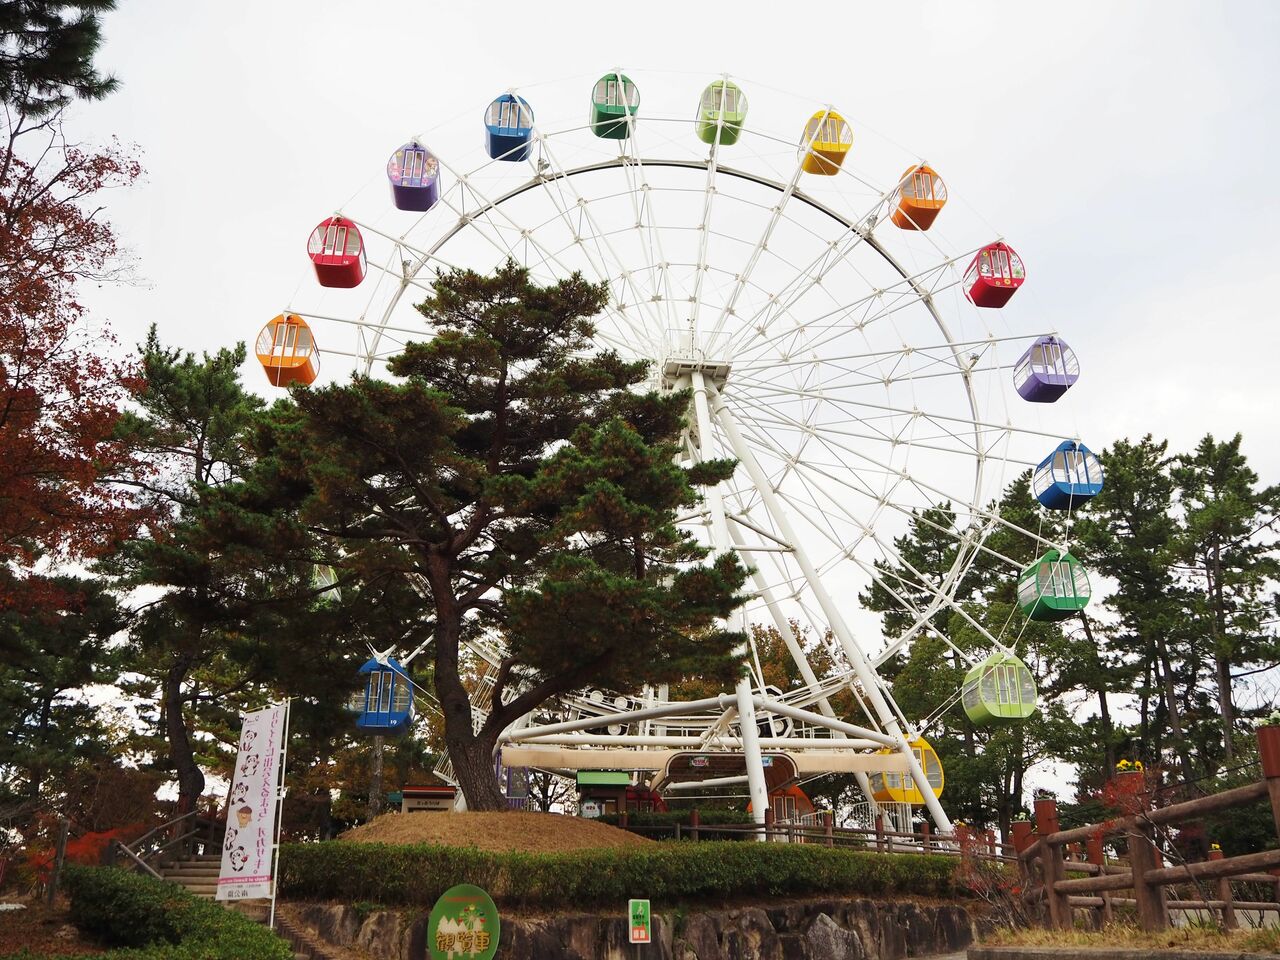 岡崎南公園　愛知県岡崎市。1回100円で乗れる観覧車。2008年にリニューアルされ、高さ30mになった。それ以前は1979年のもので高さ12mの小さなものだった。